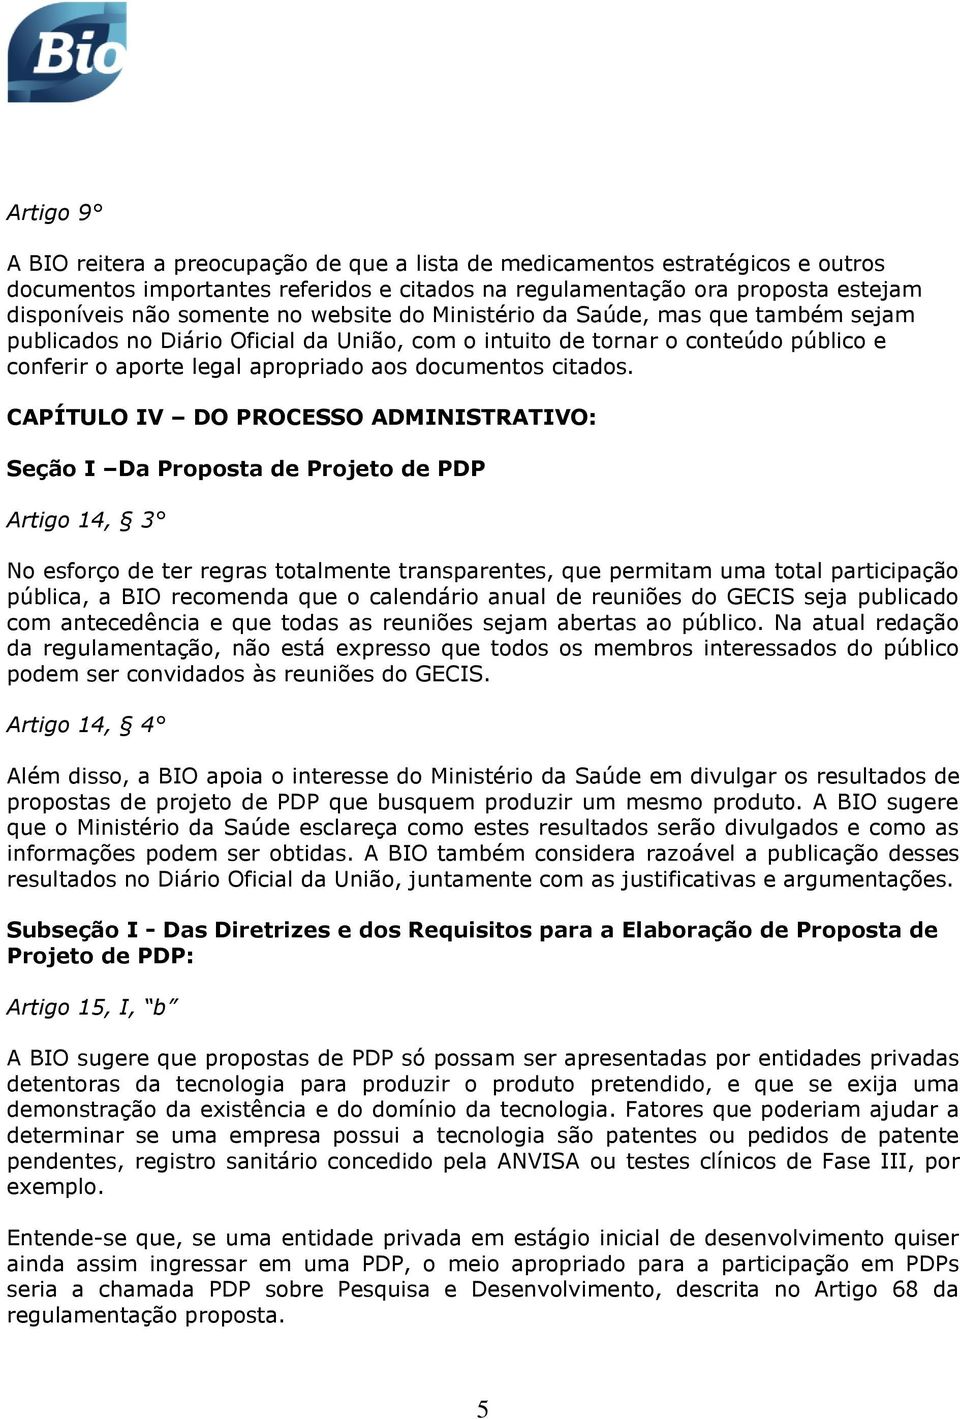 CAPÍTULO IV DO PROCESSO ADMINISTRATIVO: Seção I Da Proposta de Projeto de PDP Artigo 14, 3 No esforço de ter regras totalmente transparentes, que permitam uma total participação pública, a BIO